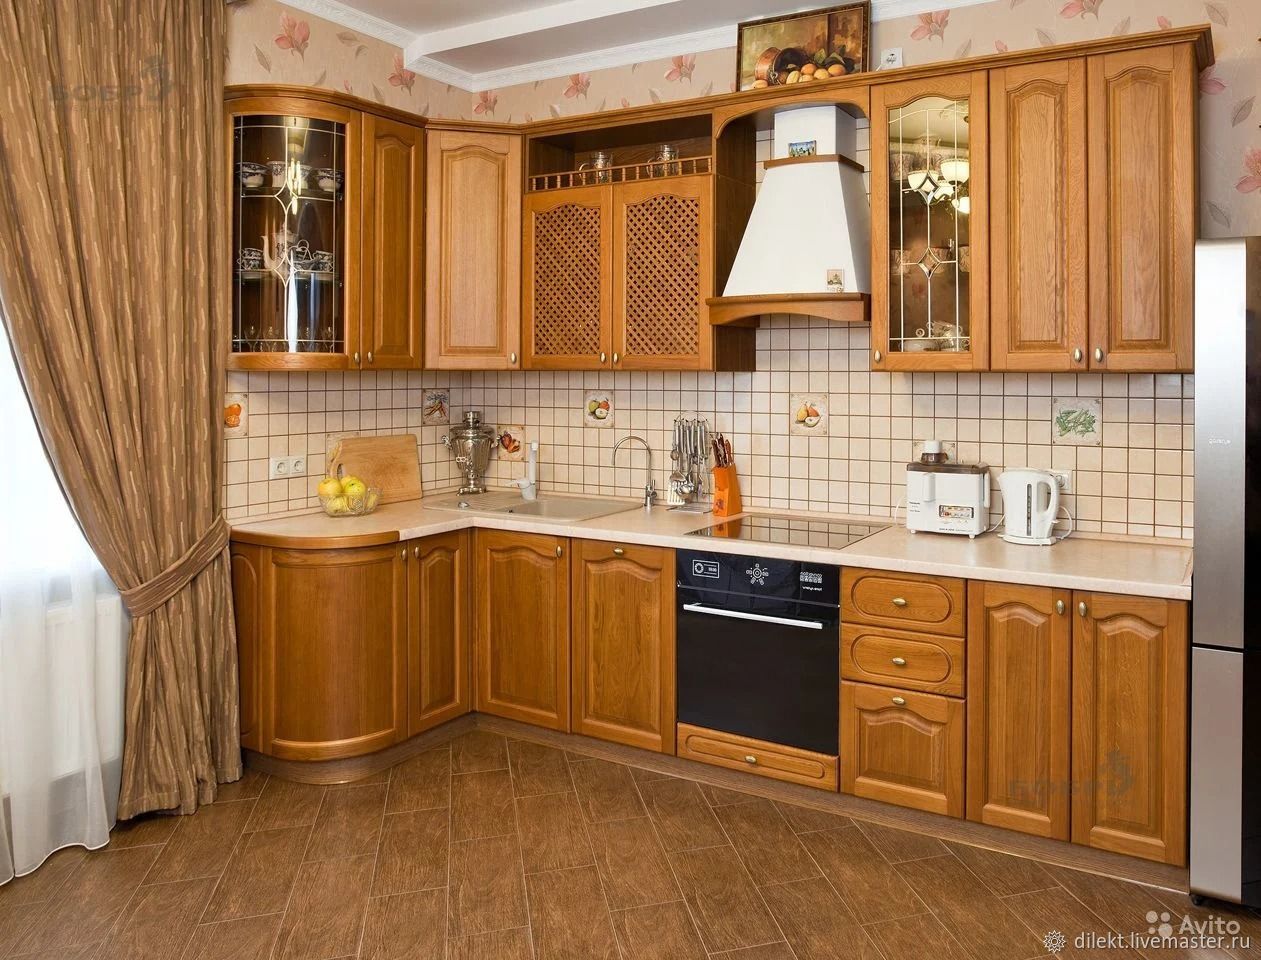 Фабричная кухня купить. Кухня угловая деревянная. Кухонный гарнитур дерево. Кухонный гарнитур из массива. Угловые кухни из массива дерева.